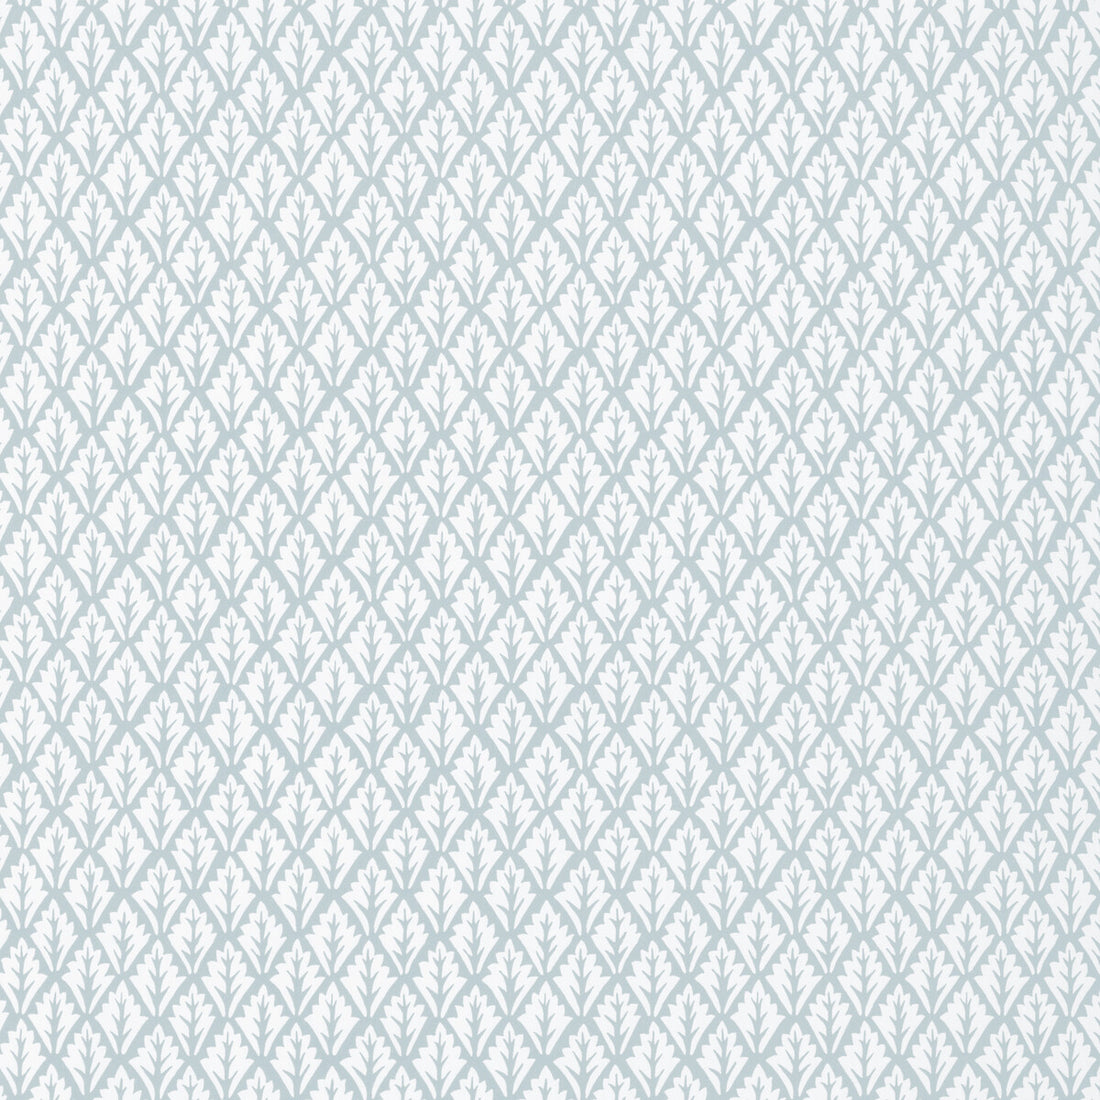 Dorso fabric in mist color - pattern DORSO.1115.0 - by Kravet Basics